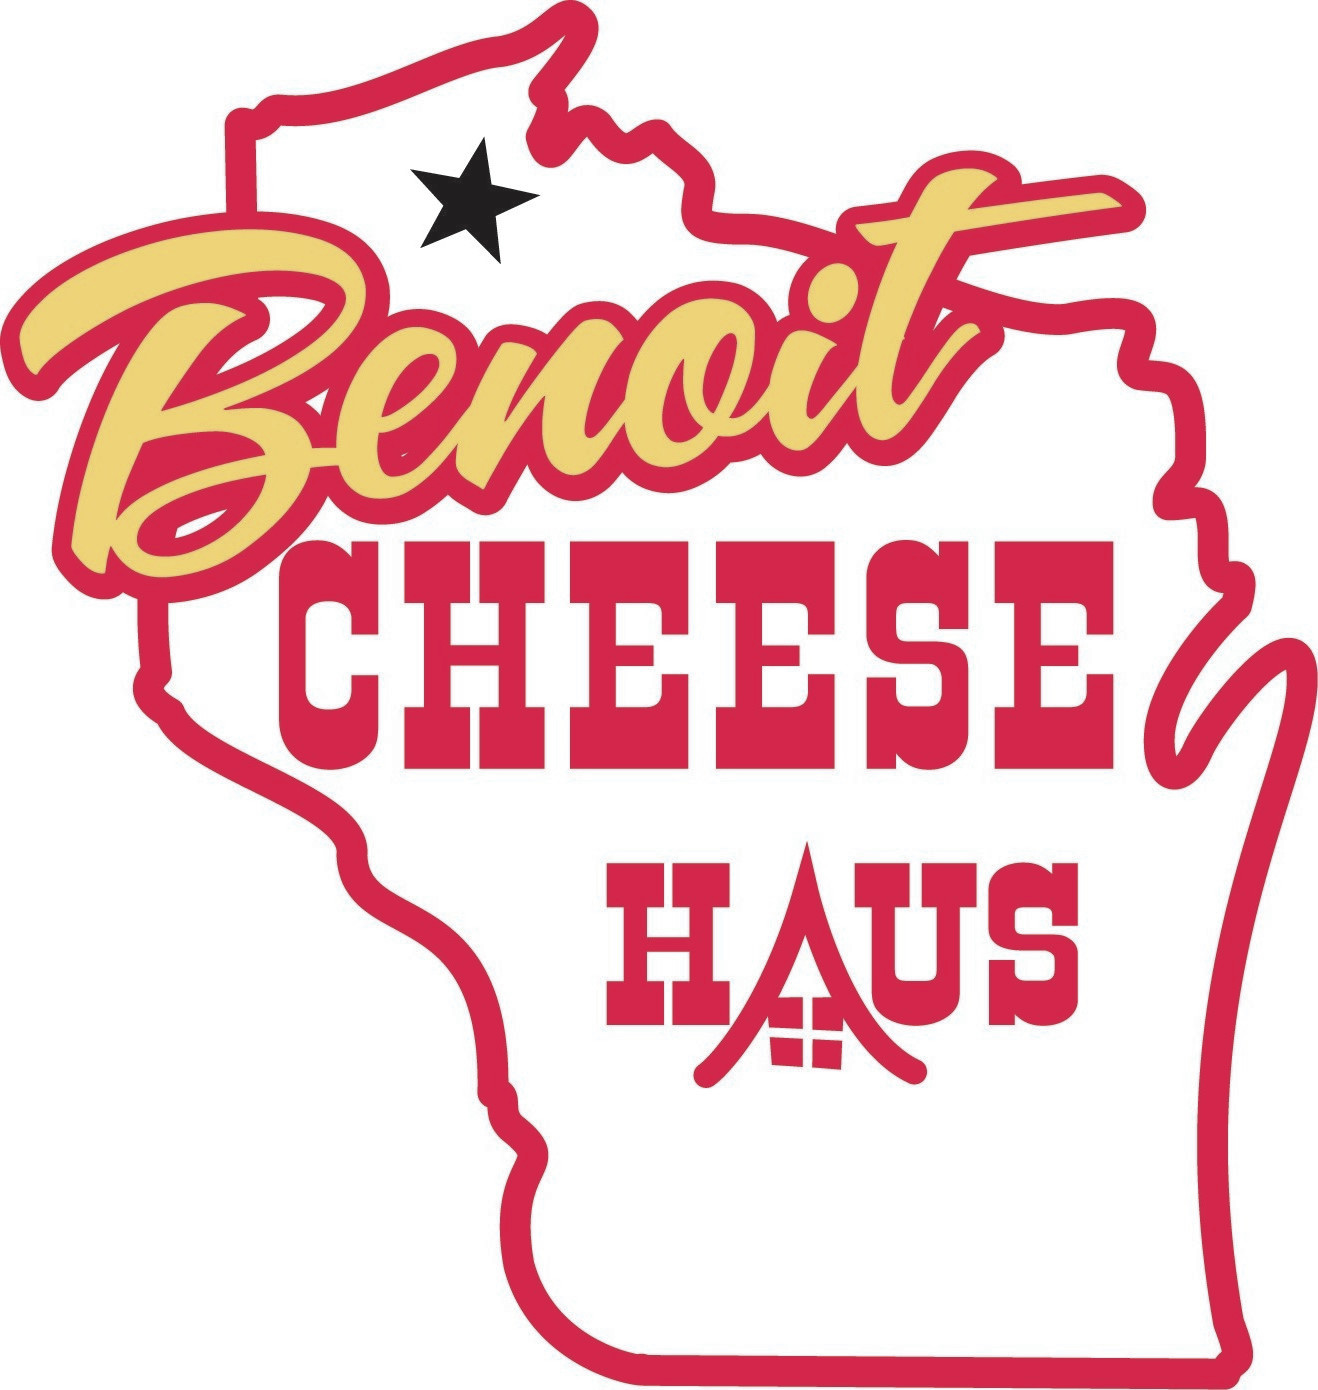 Benoit Cheese Haus